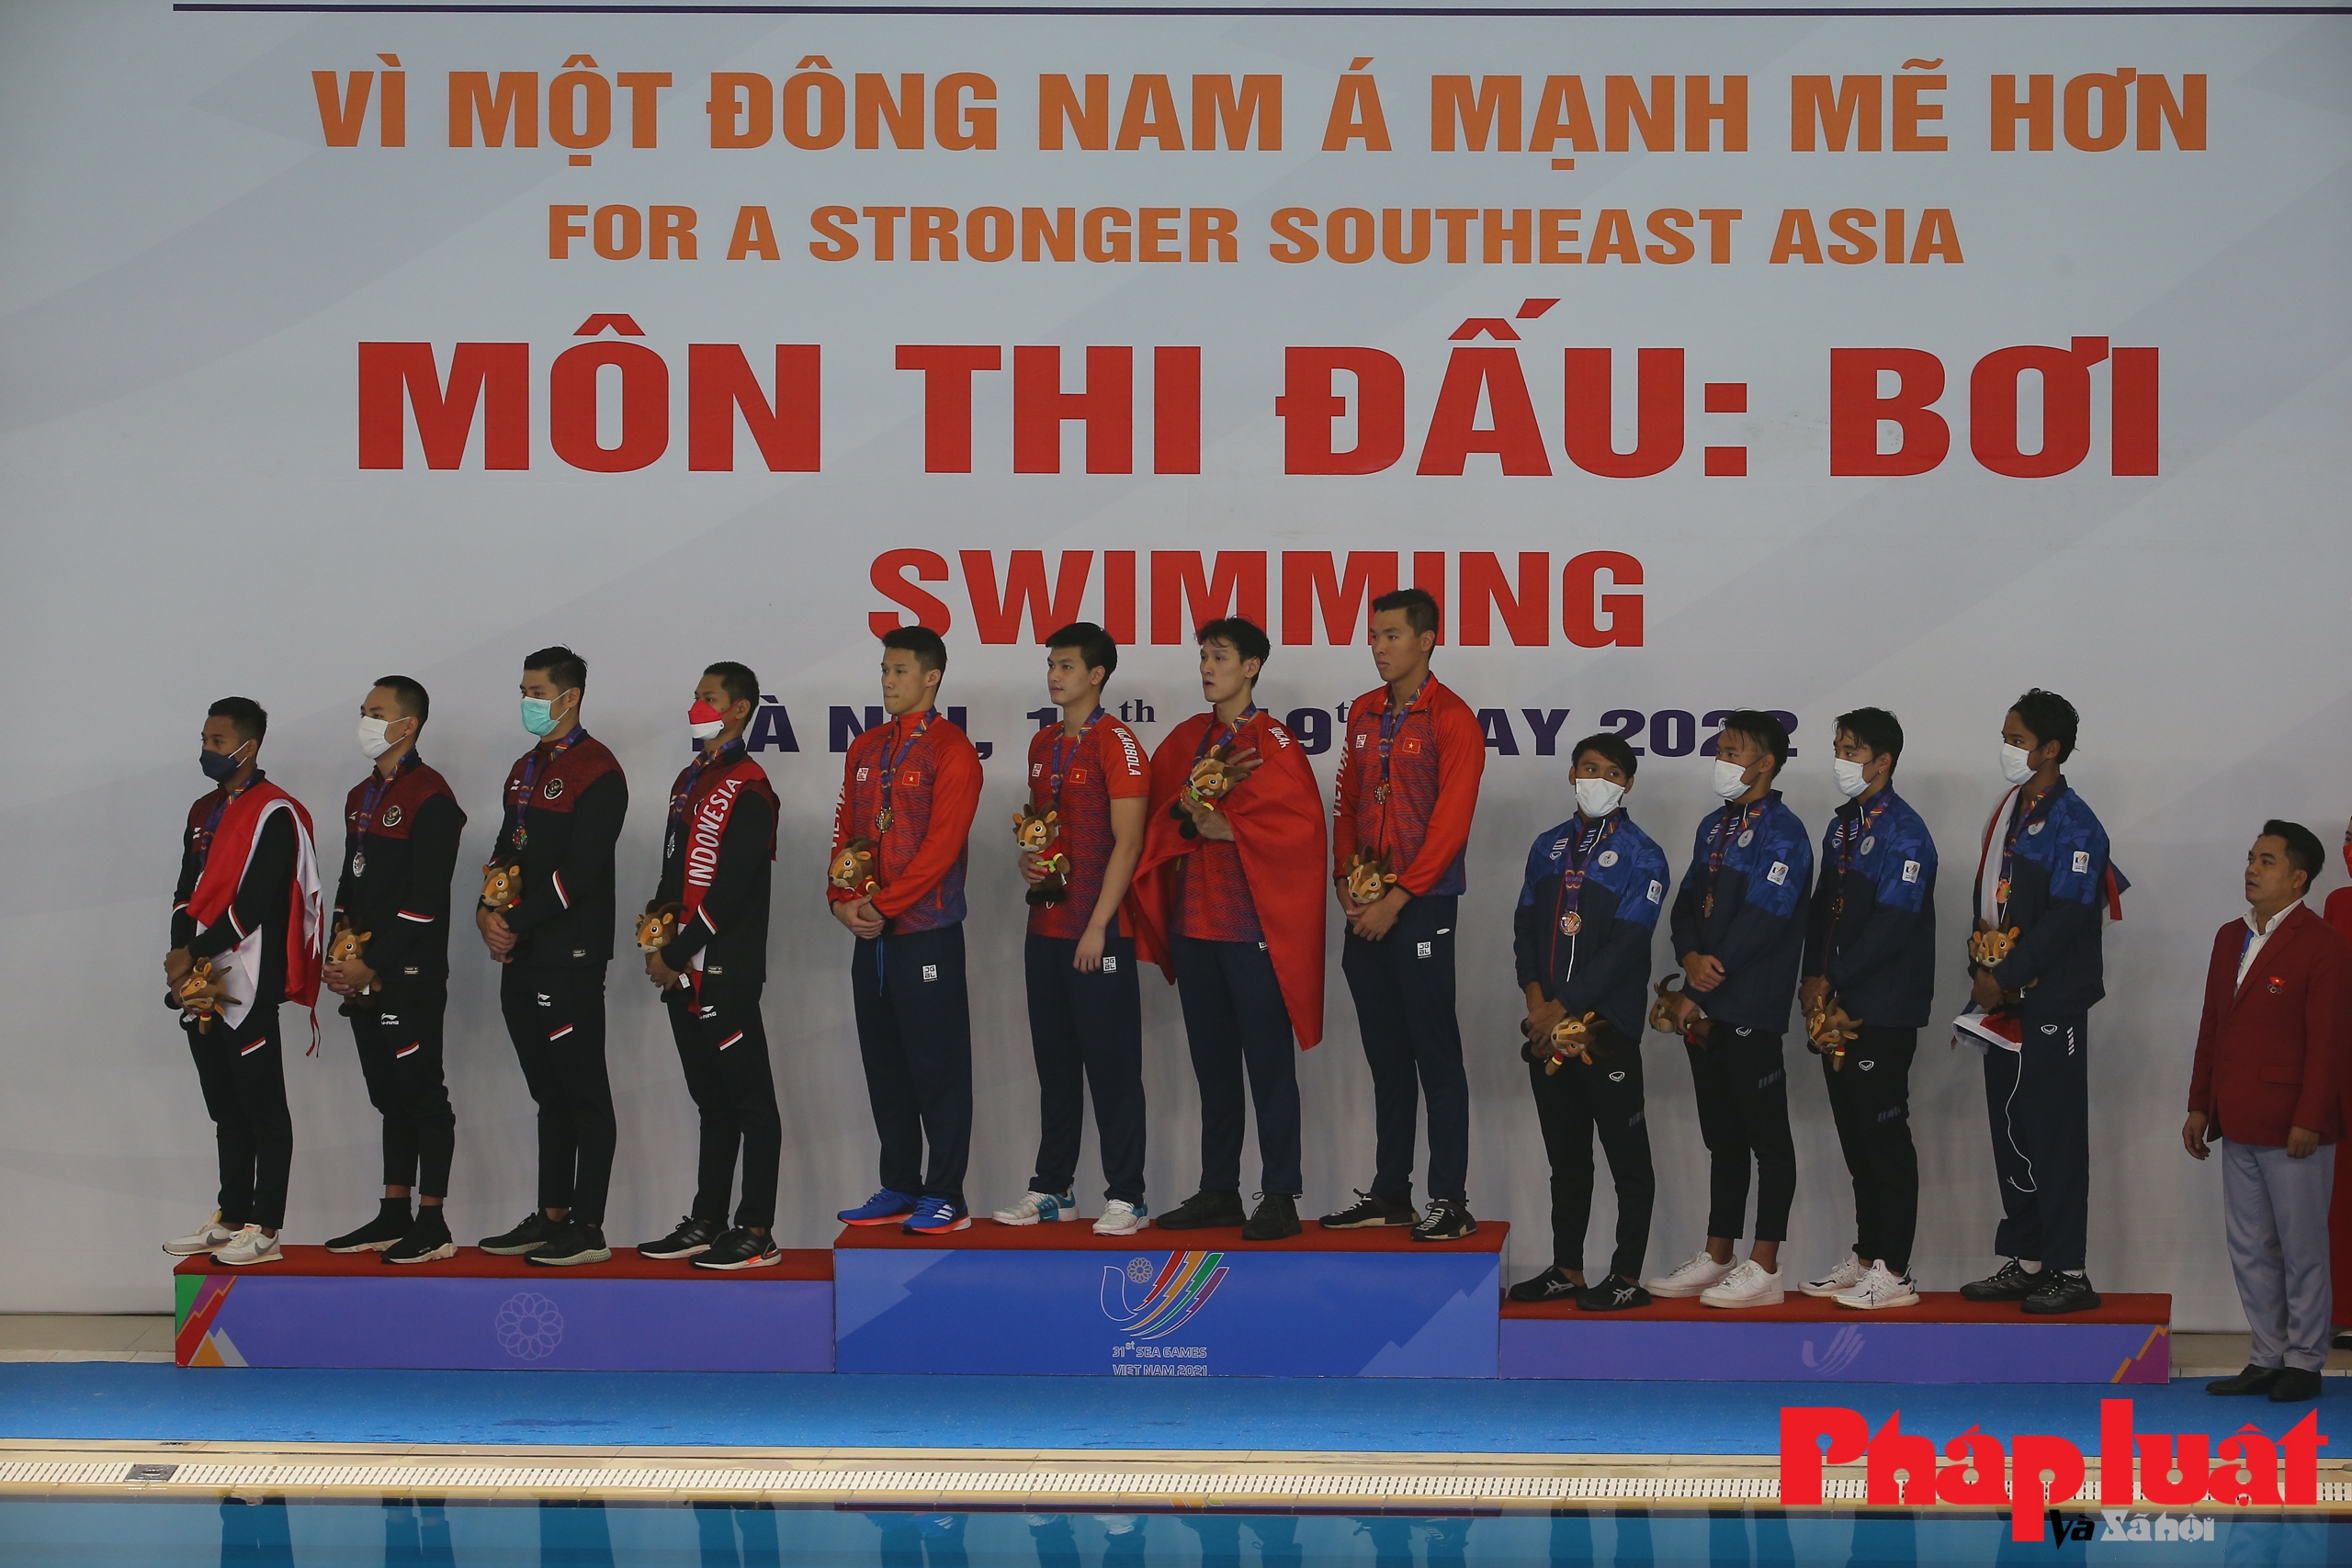 Bơi Việt Nam giành 3 huy chương Vàng, phá 1 kỷ lục SEA Games